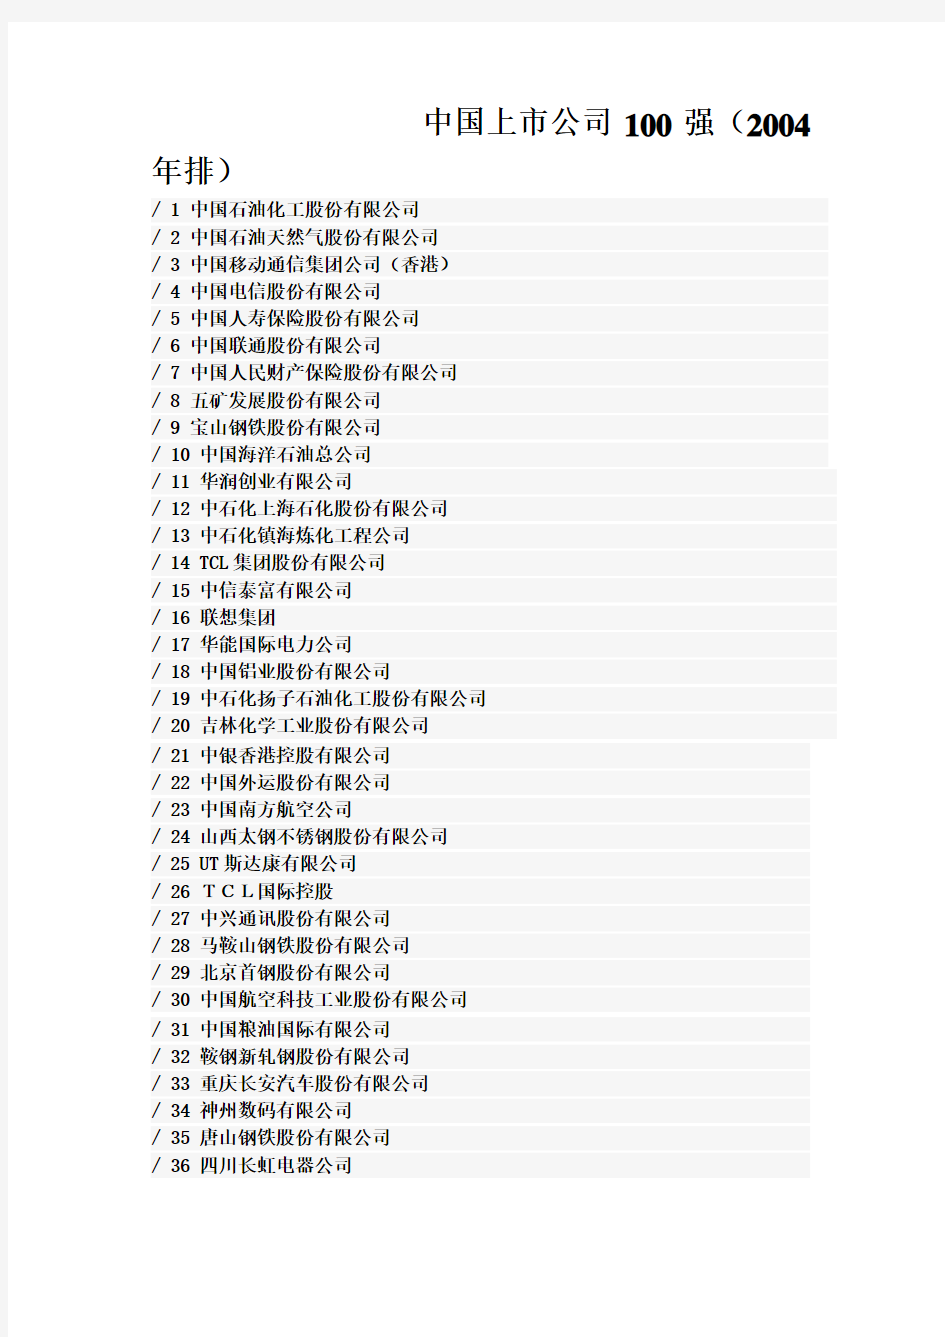 中国上市公司100强(2004年排)